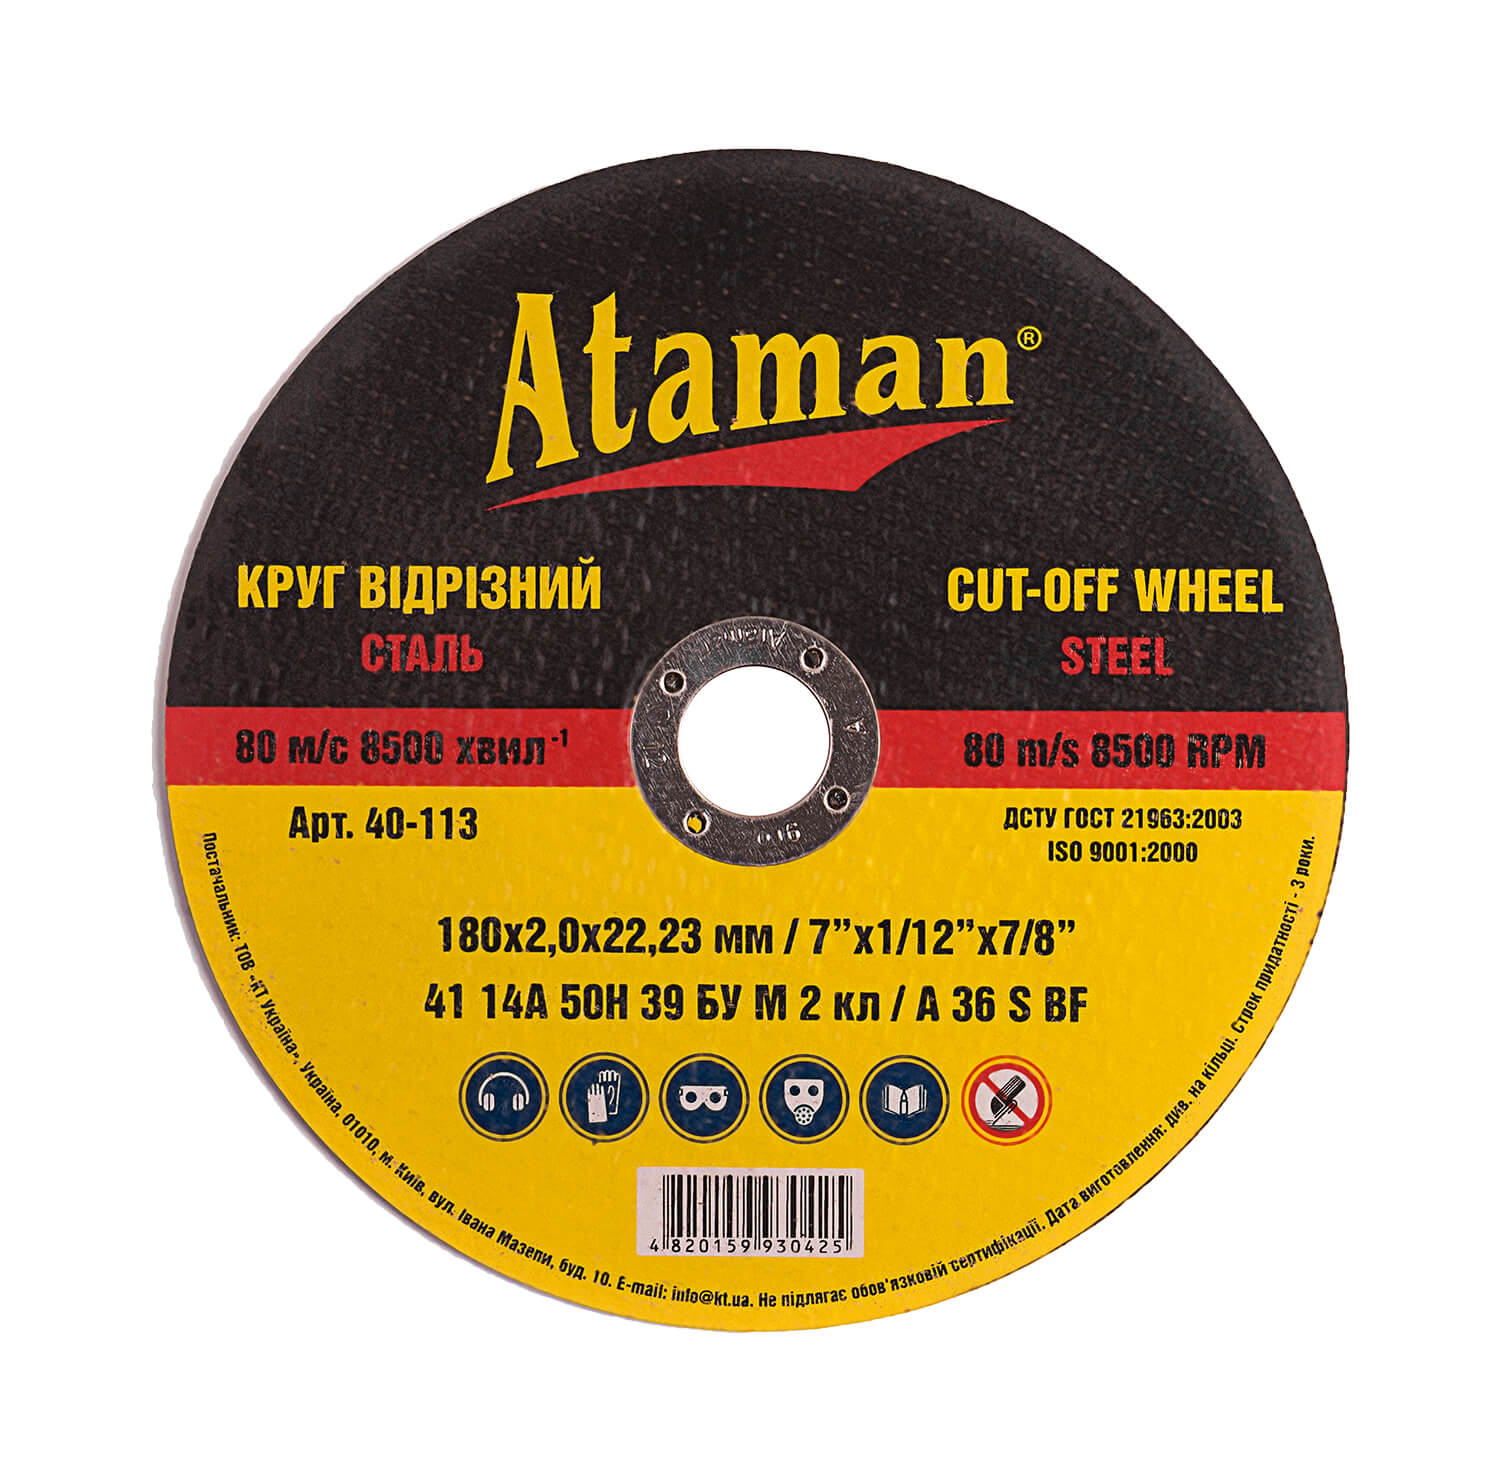 Cutting wheels for metal Ataman 41 14А 180х2.0х22.23